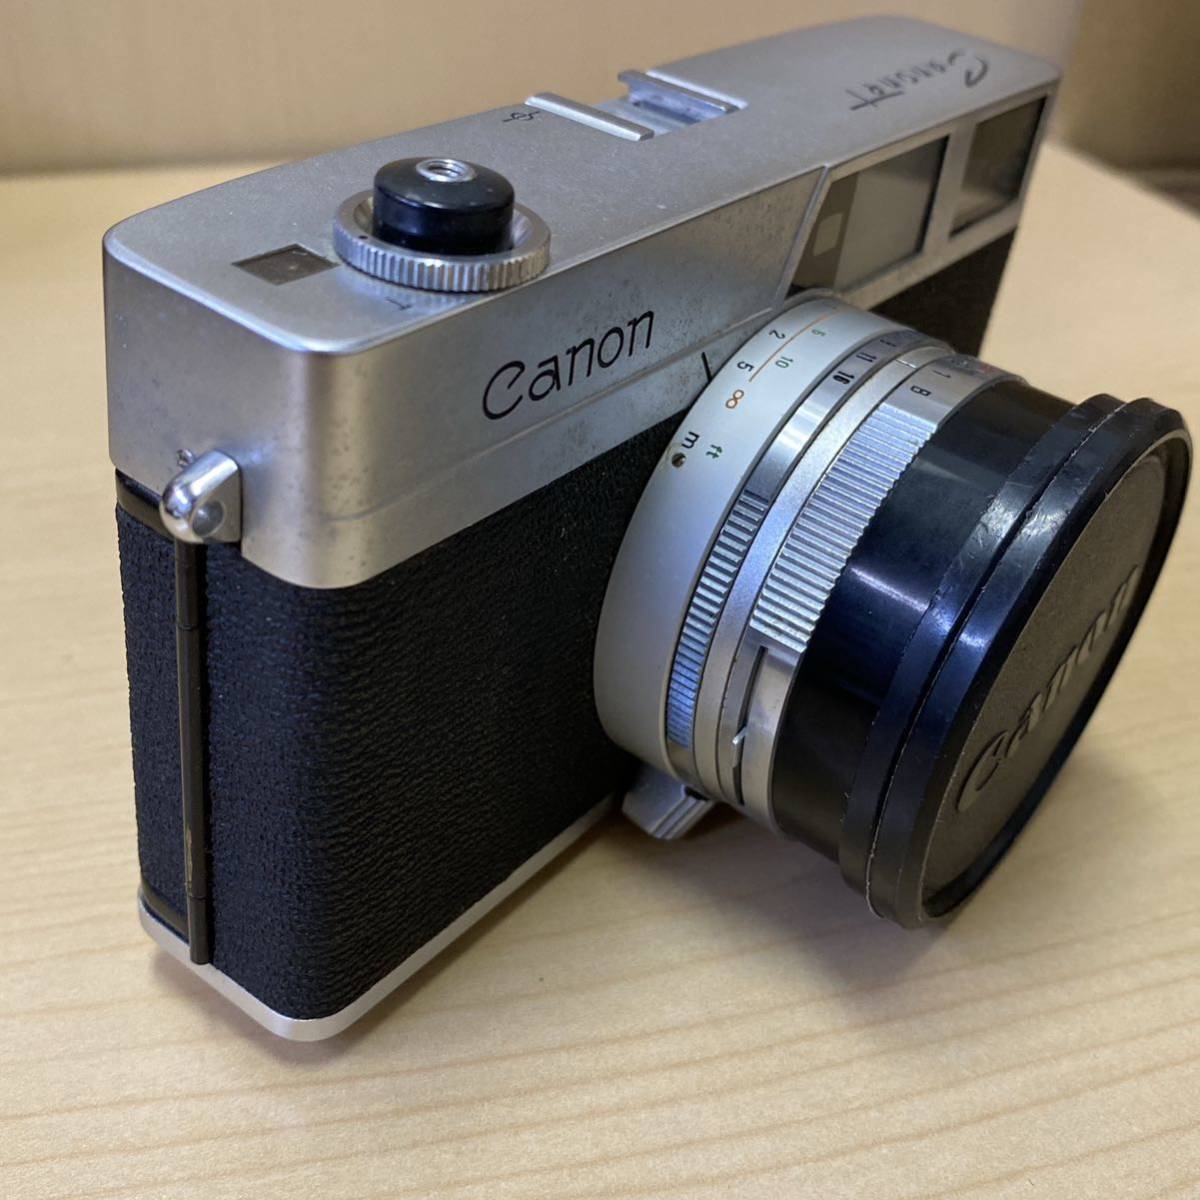 【T1212】Canon キャノン Canonet フィルムカメラ ブラック キズあり 汚れあり 動作未確認 長期保管品 コレクション_画像4